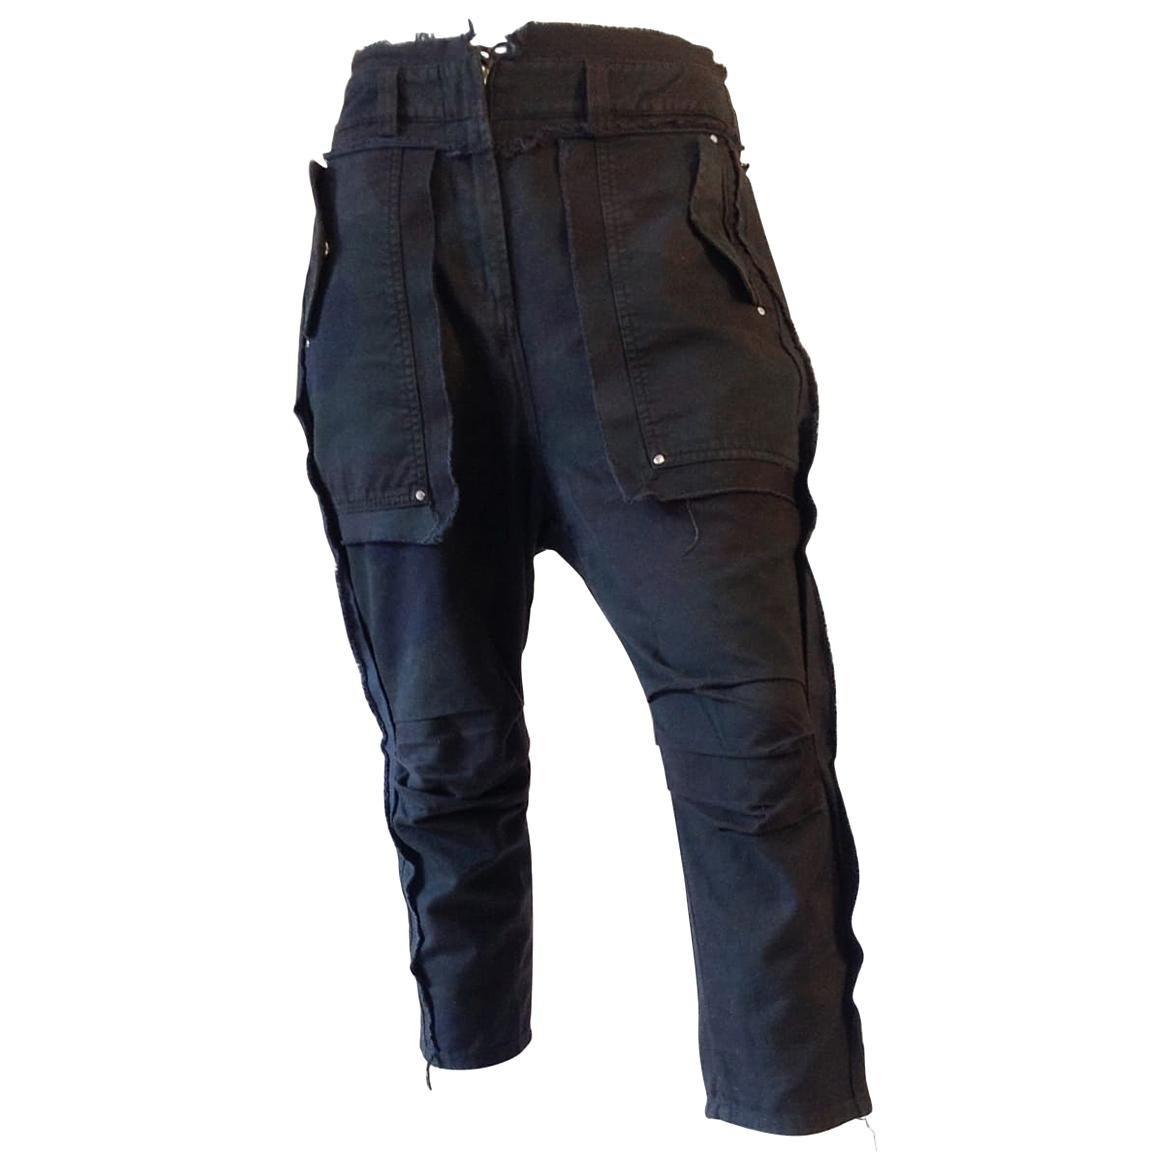 Gianfranco Ferré drop crotch black jeans, c 2010 For Sale